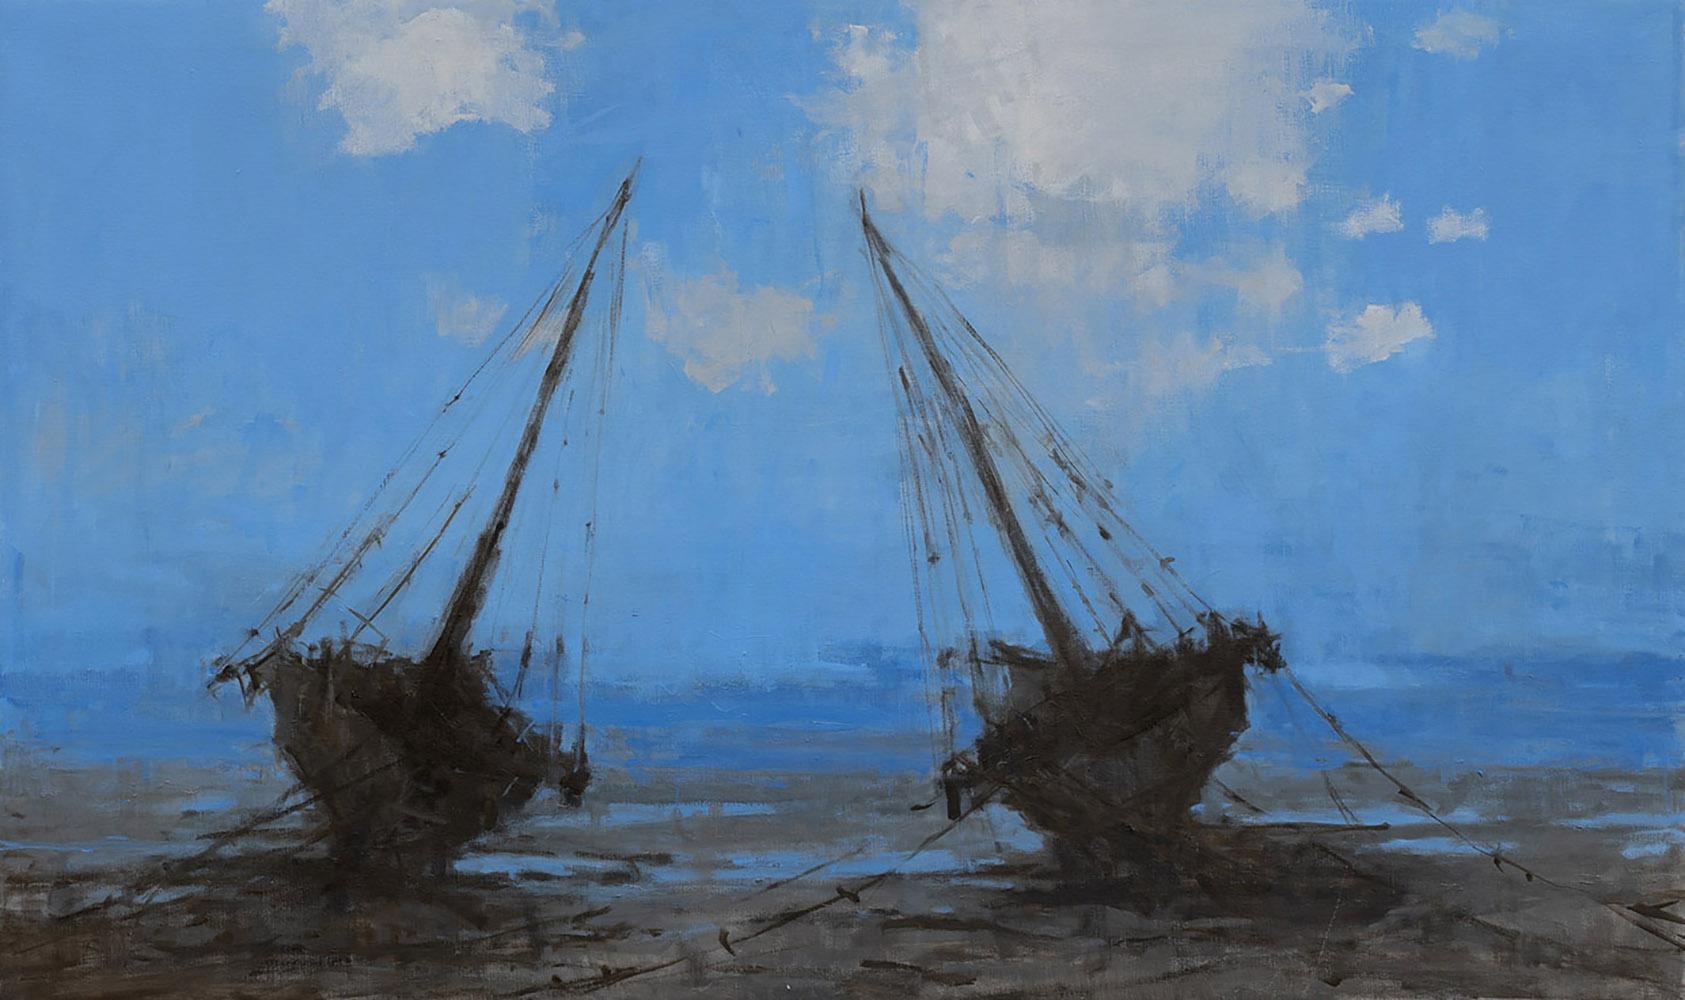 Barcas en Bagamoyo II est une peinture unique à l'huile sur toile de l'artiste contemporain espagnol Calo Carratalá, dont les dimensions sont de 94 × 158 cm (37 × 62,2 in). 
L'œuvre est signée et accompagnée d'un certificat d'authenticité.

Le